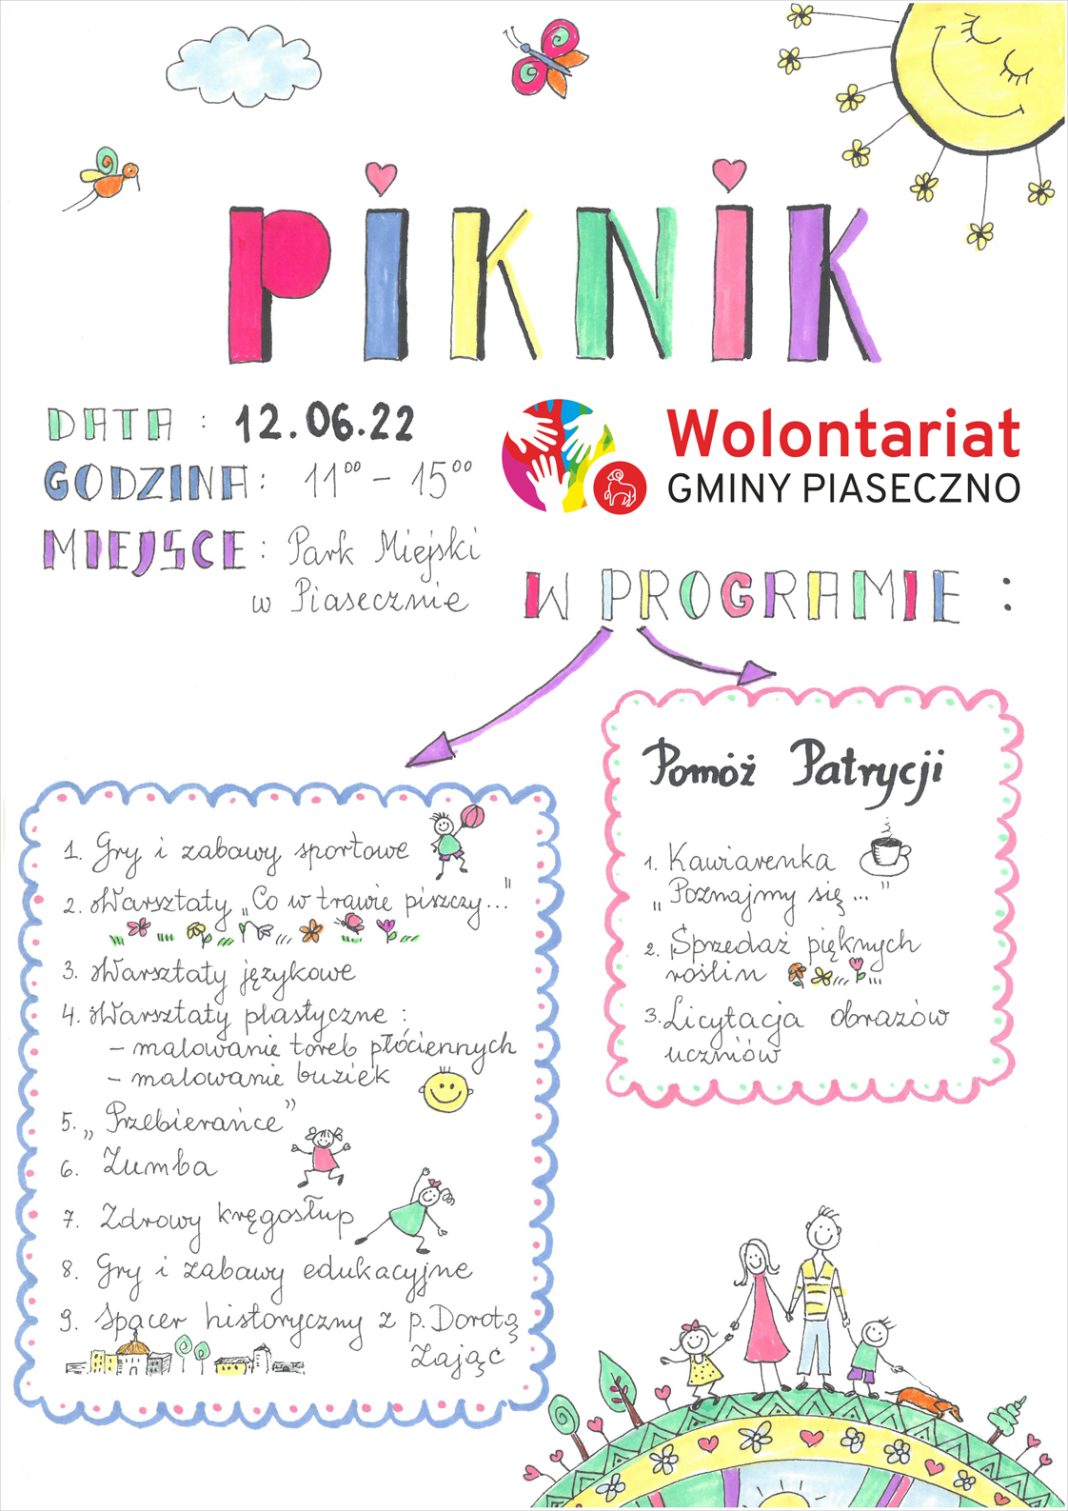 Plakat wydarzenia Piknik Wolontariat Gminy Piaseczno